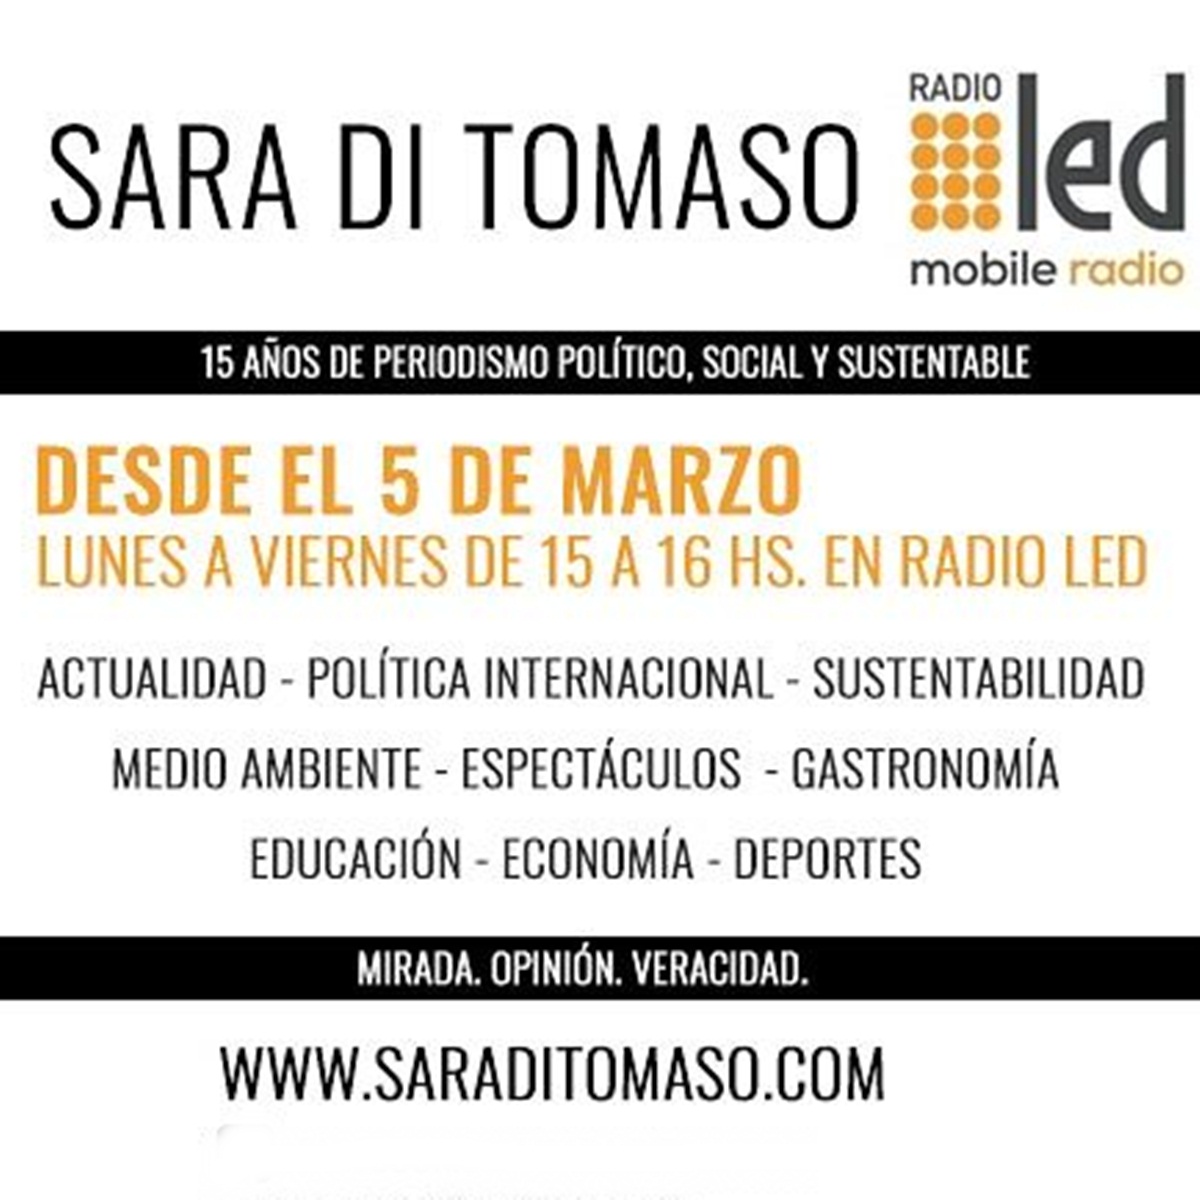 #Podcast Tercer Tiempo | 22.06: Entrevistas con @CarlaCarrizoAR y Armando Pepe #Inmobiliarias